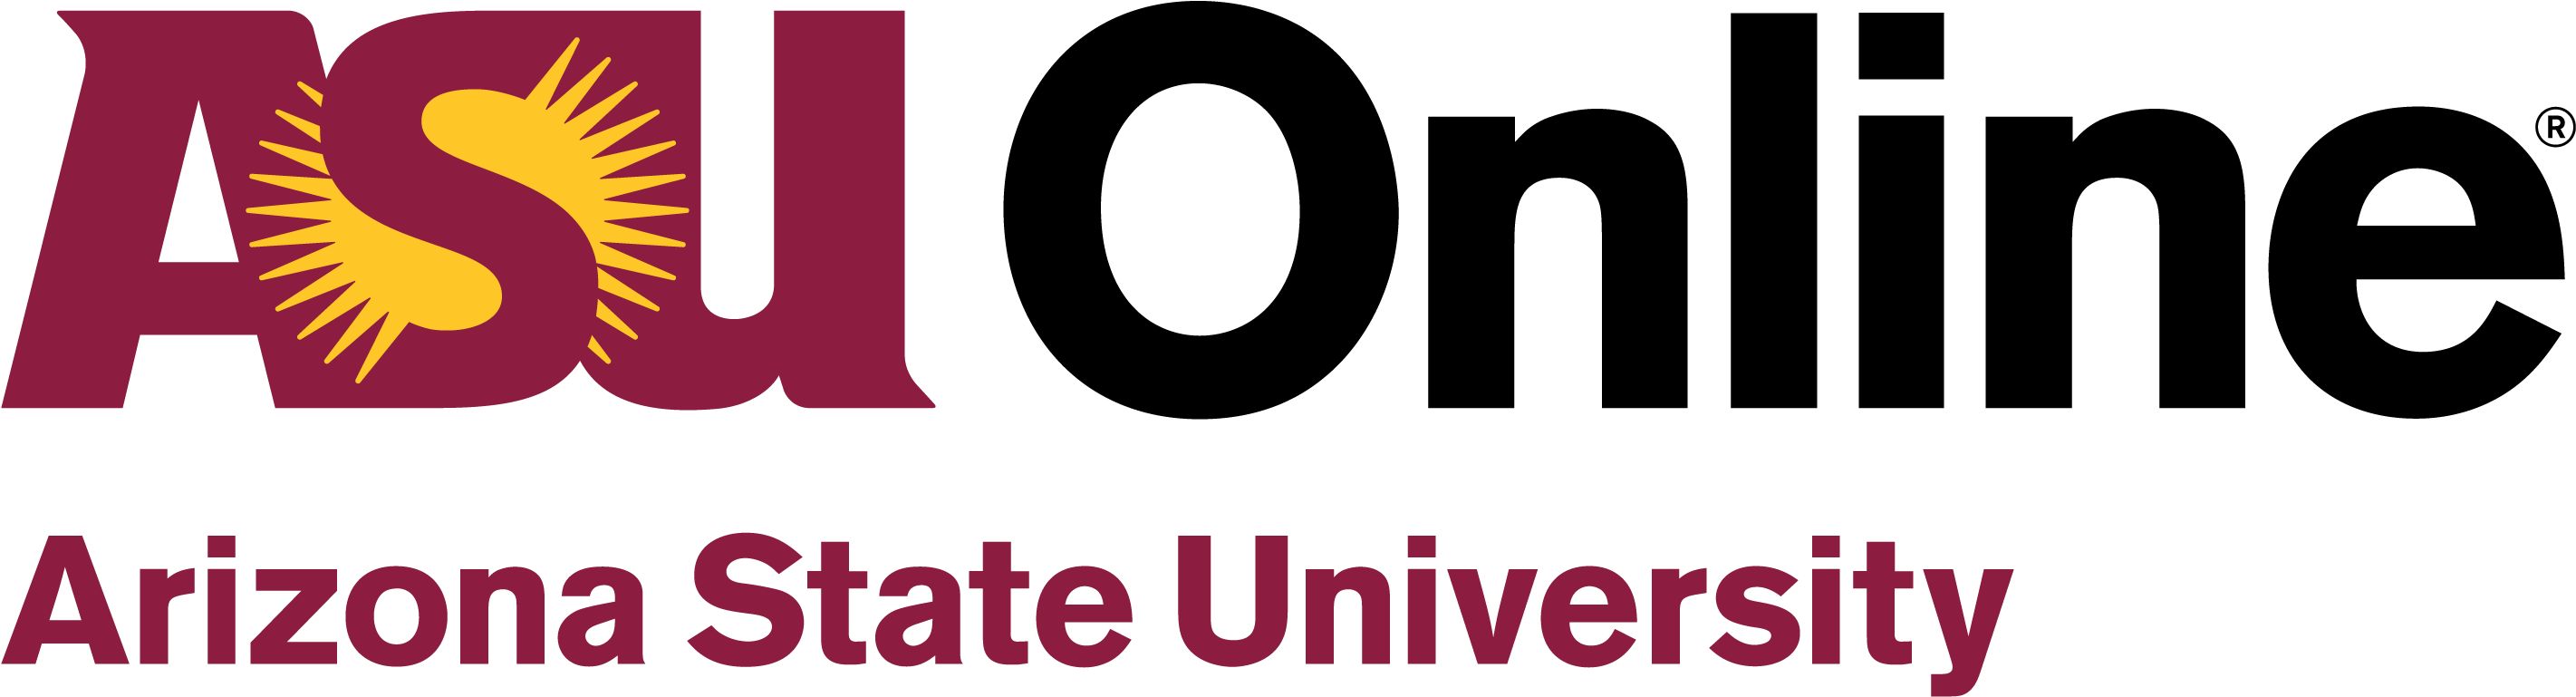 Arizona State University Asu Logo Png Free Image